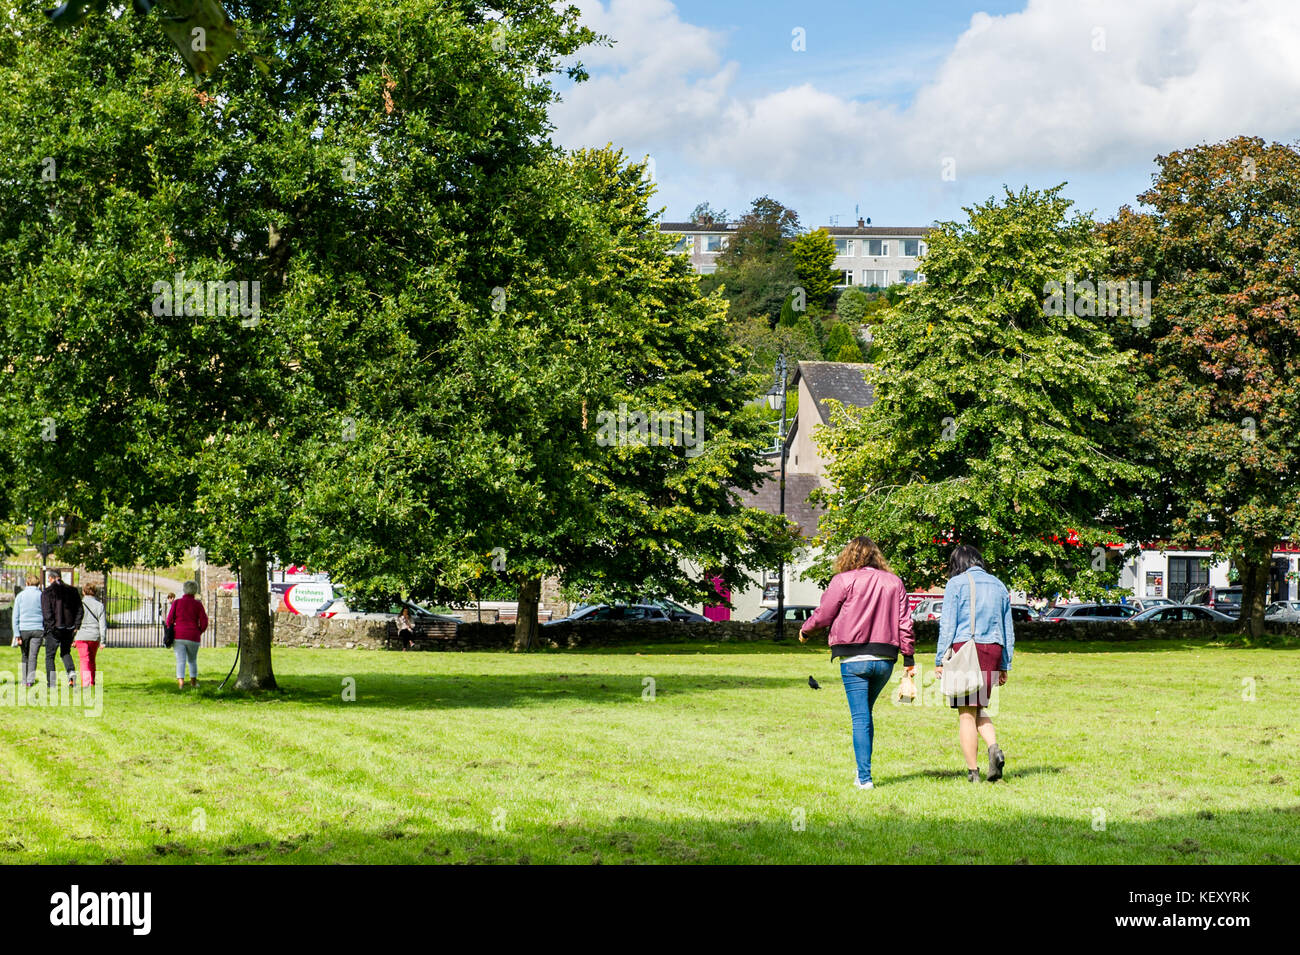 Blarney carré sur une journée ensoleillée avec des gens qui marchent, herbe, arbres et copier l'espace. Blarney, comté de Cork, Irlande. Banque D'Images